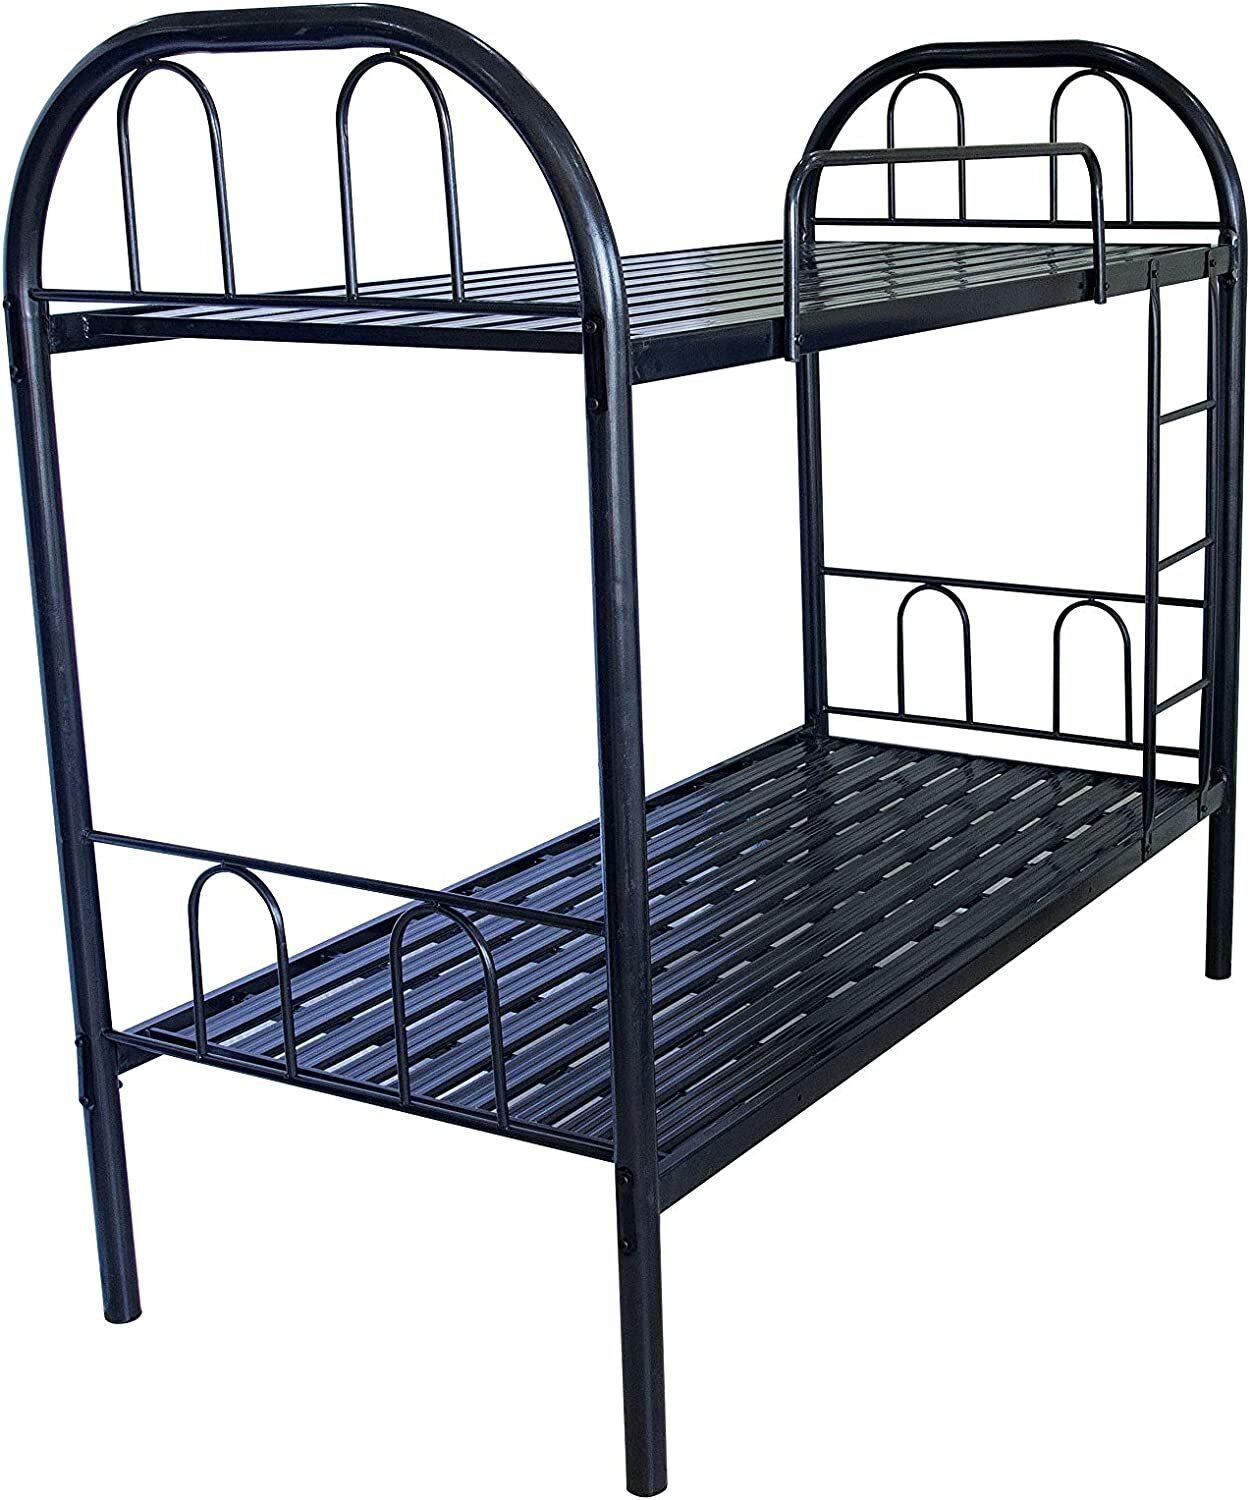 Karnak Bunk Bed Metal Size 90x190 Centimetres